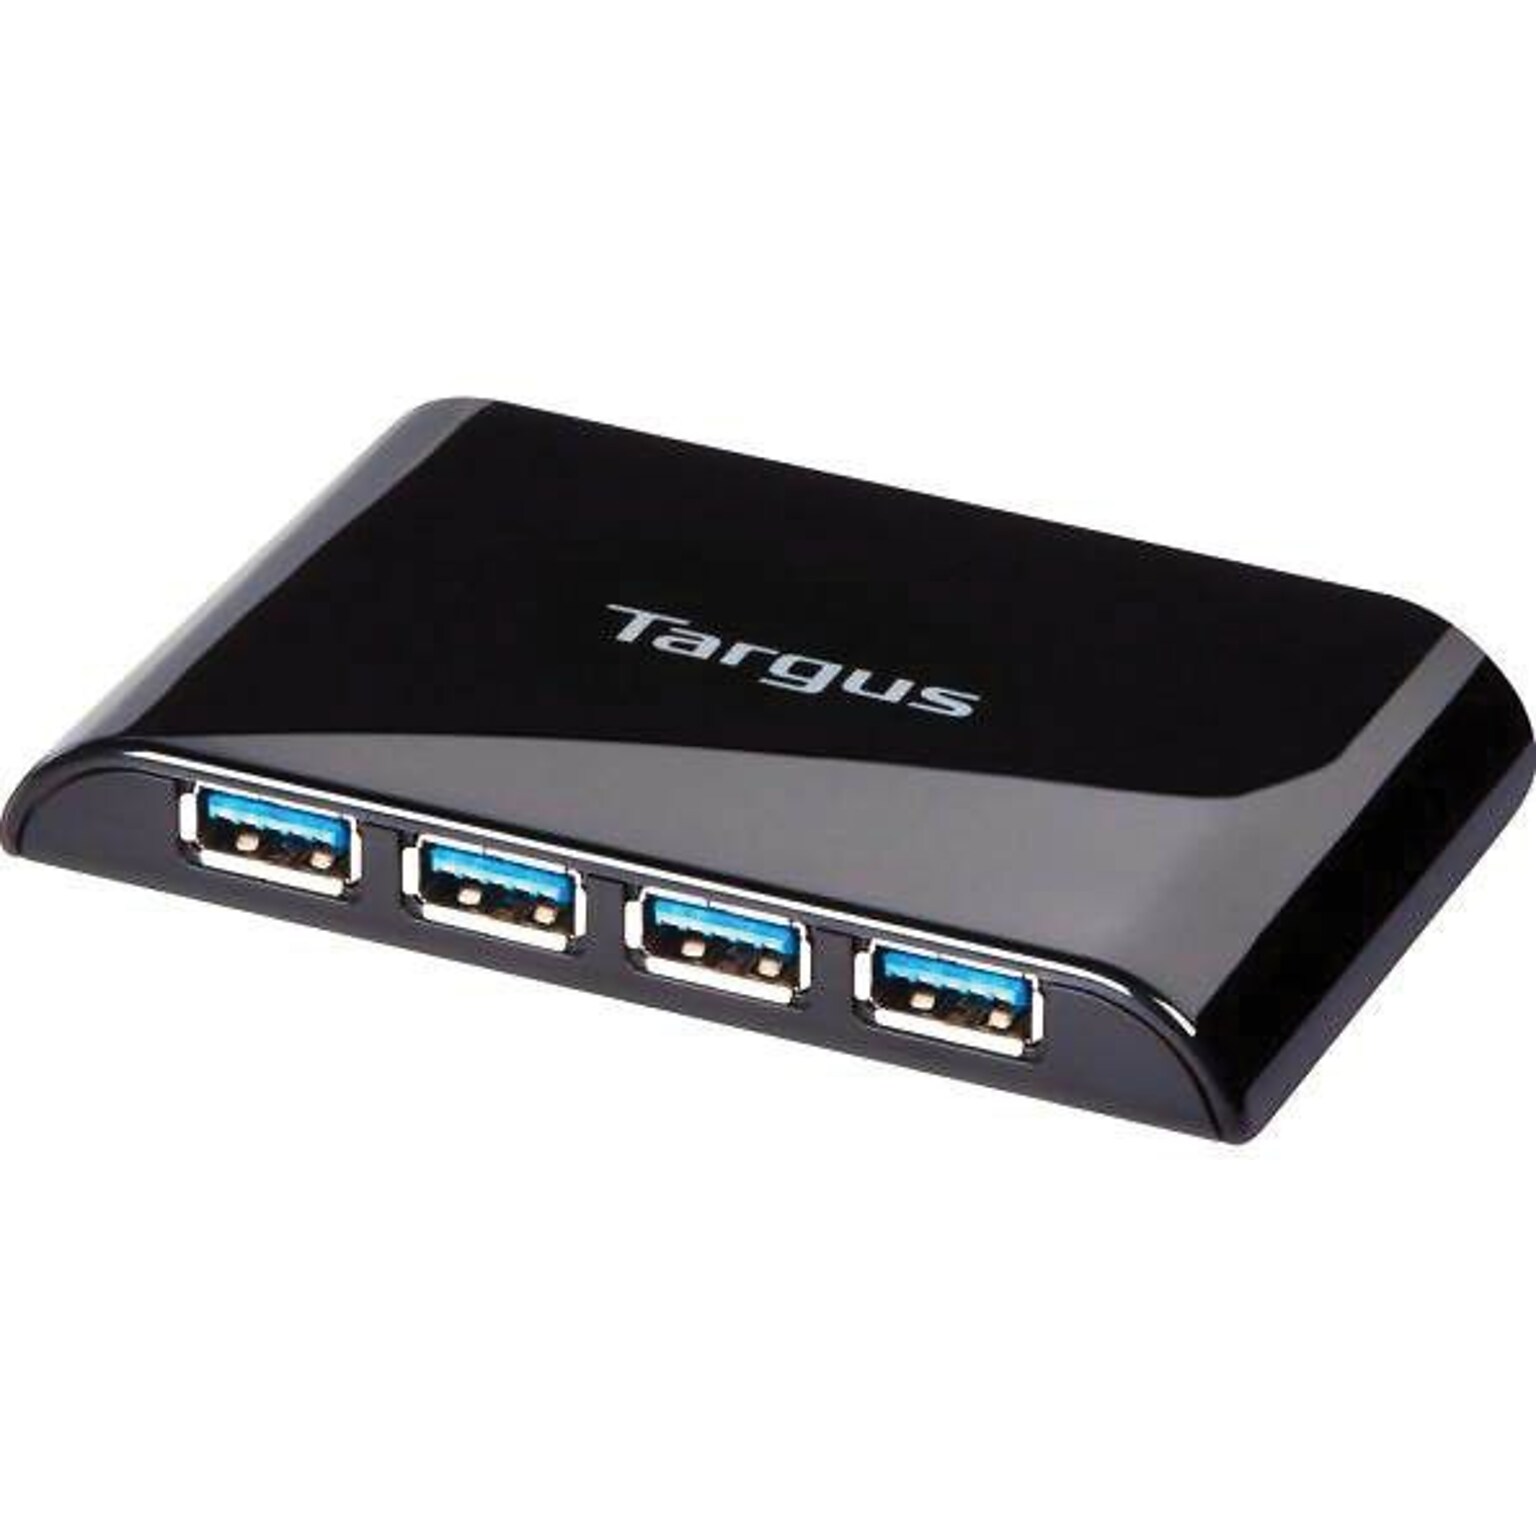 Targus 4-Port USB 3.0 SuperSpeed Hub